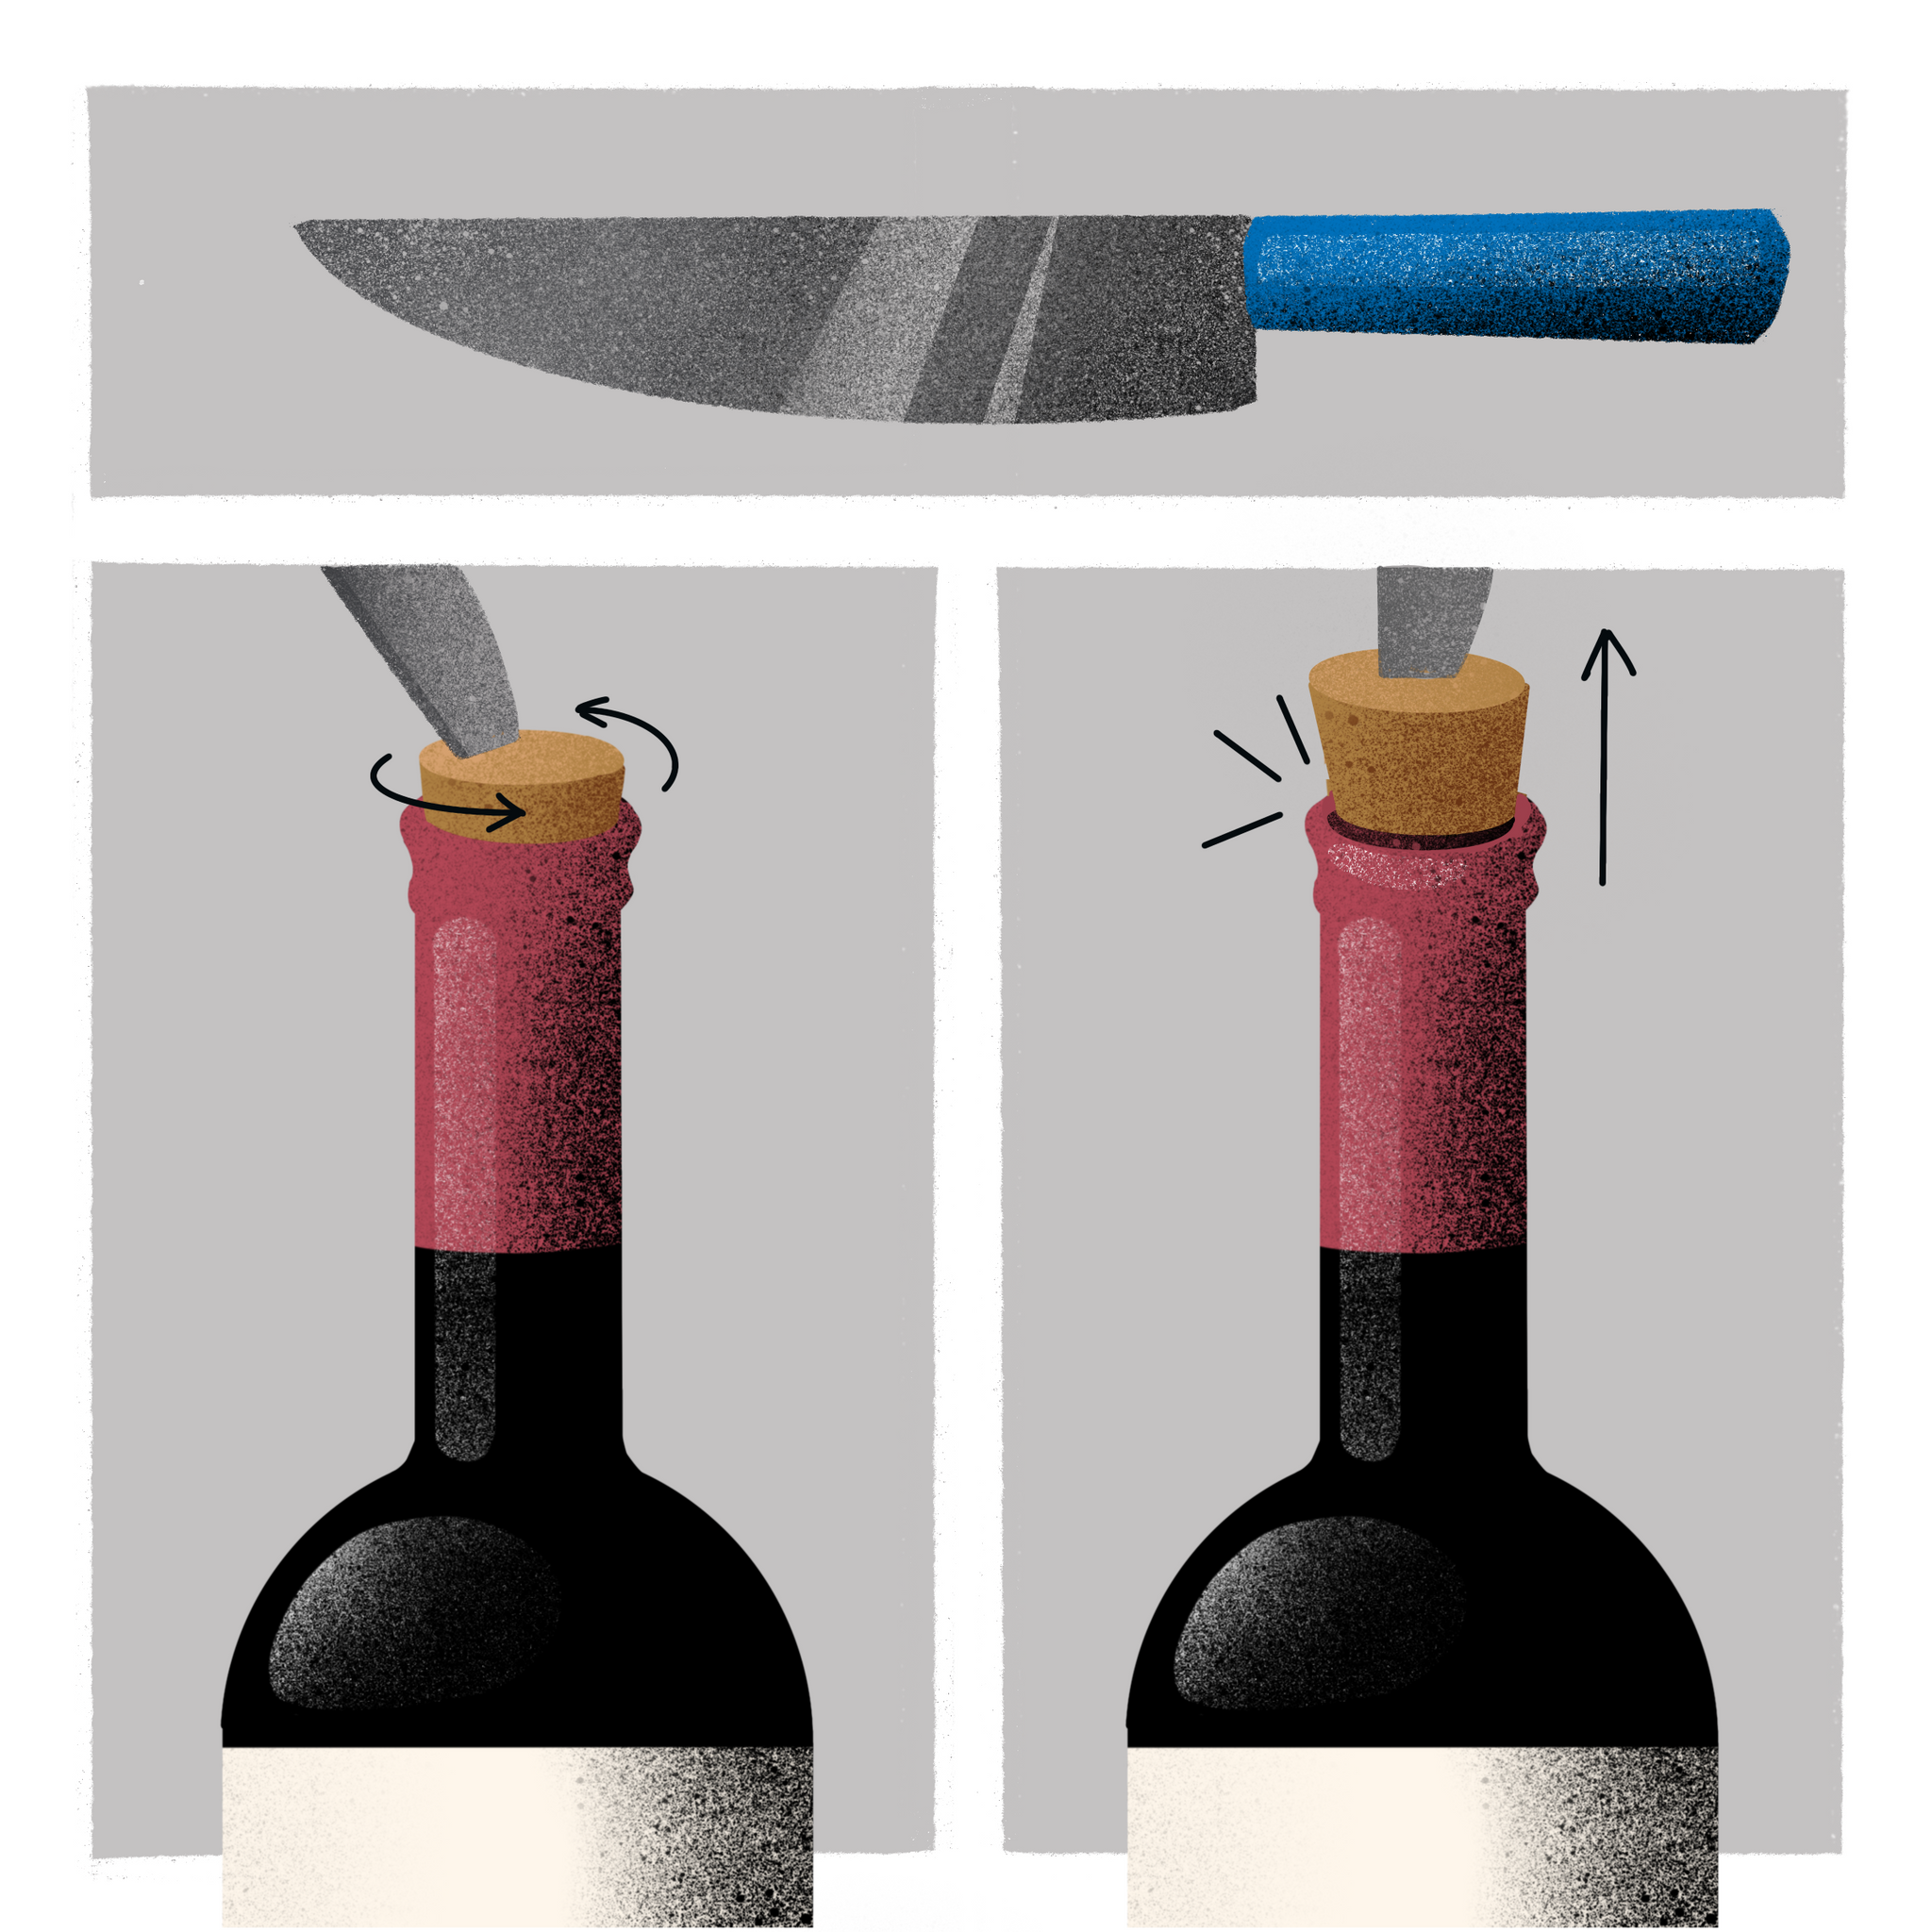 Как быстро открыть вино без штопора в домашних условиях? – сайт о винограде и вине